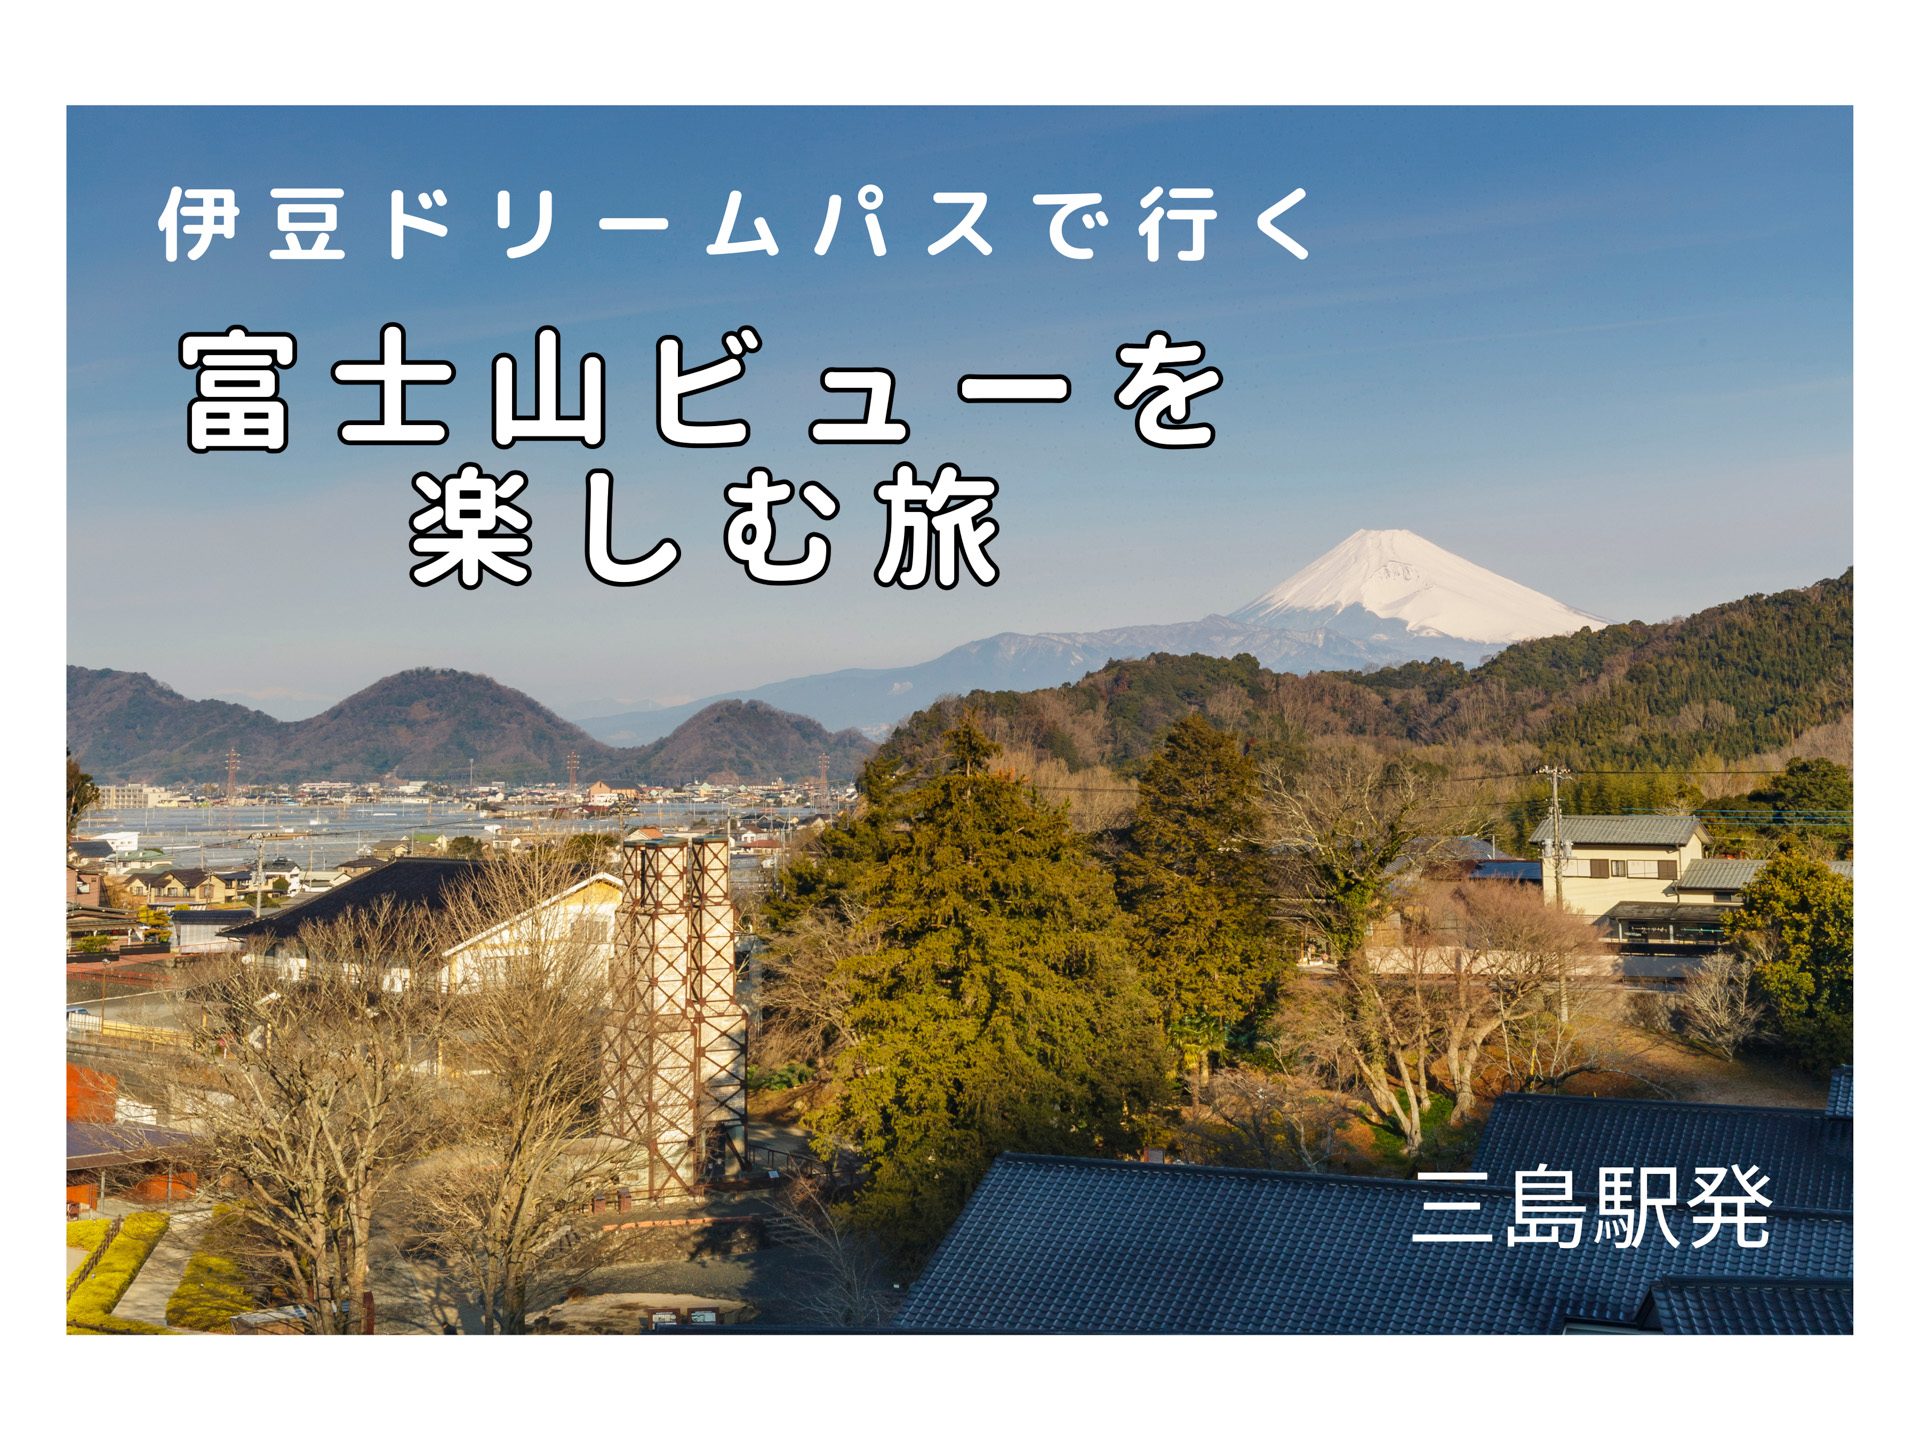 三島駅発 伊豆ドリームパスで行く 富士山ビューを楽しむ旅